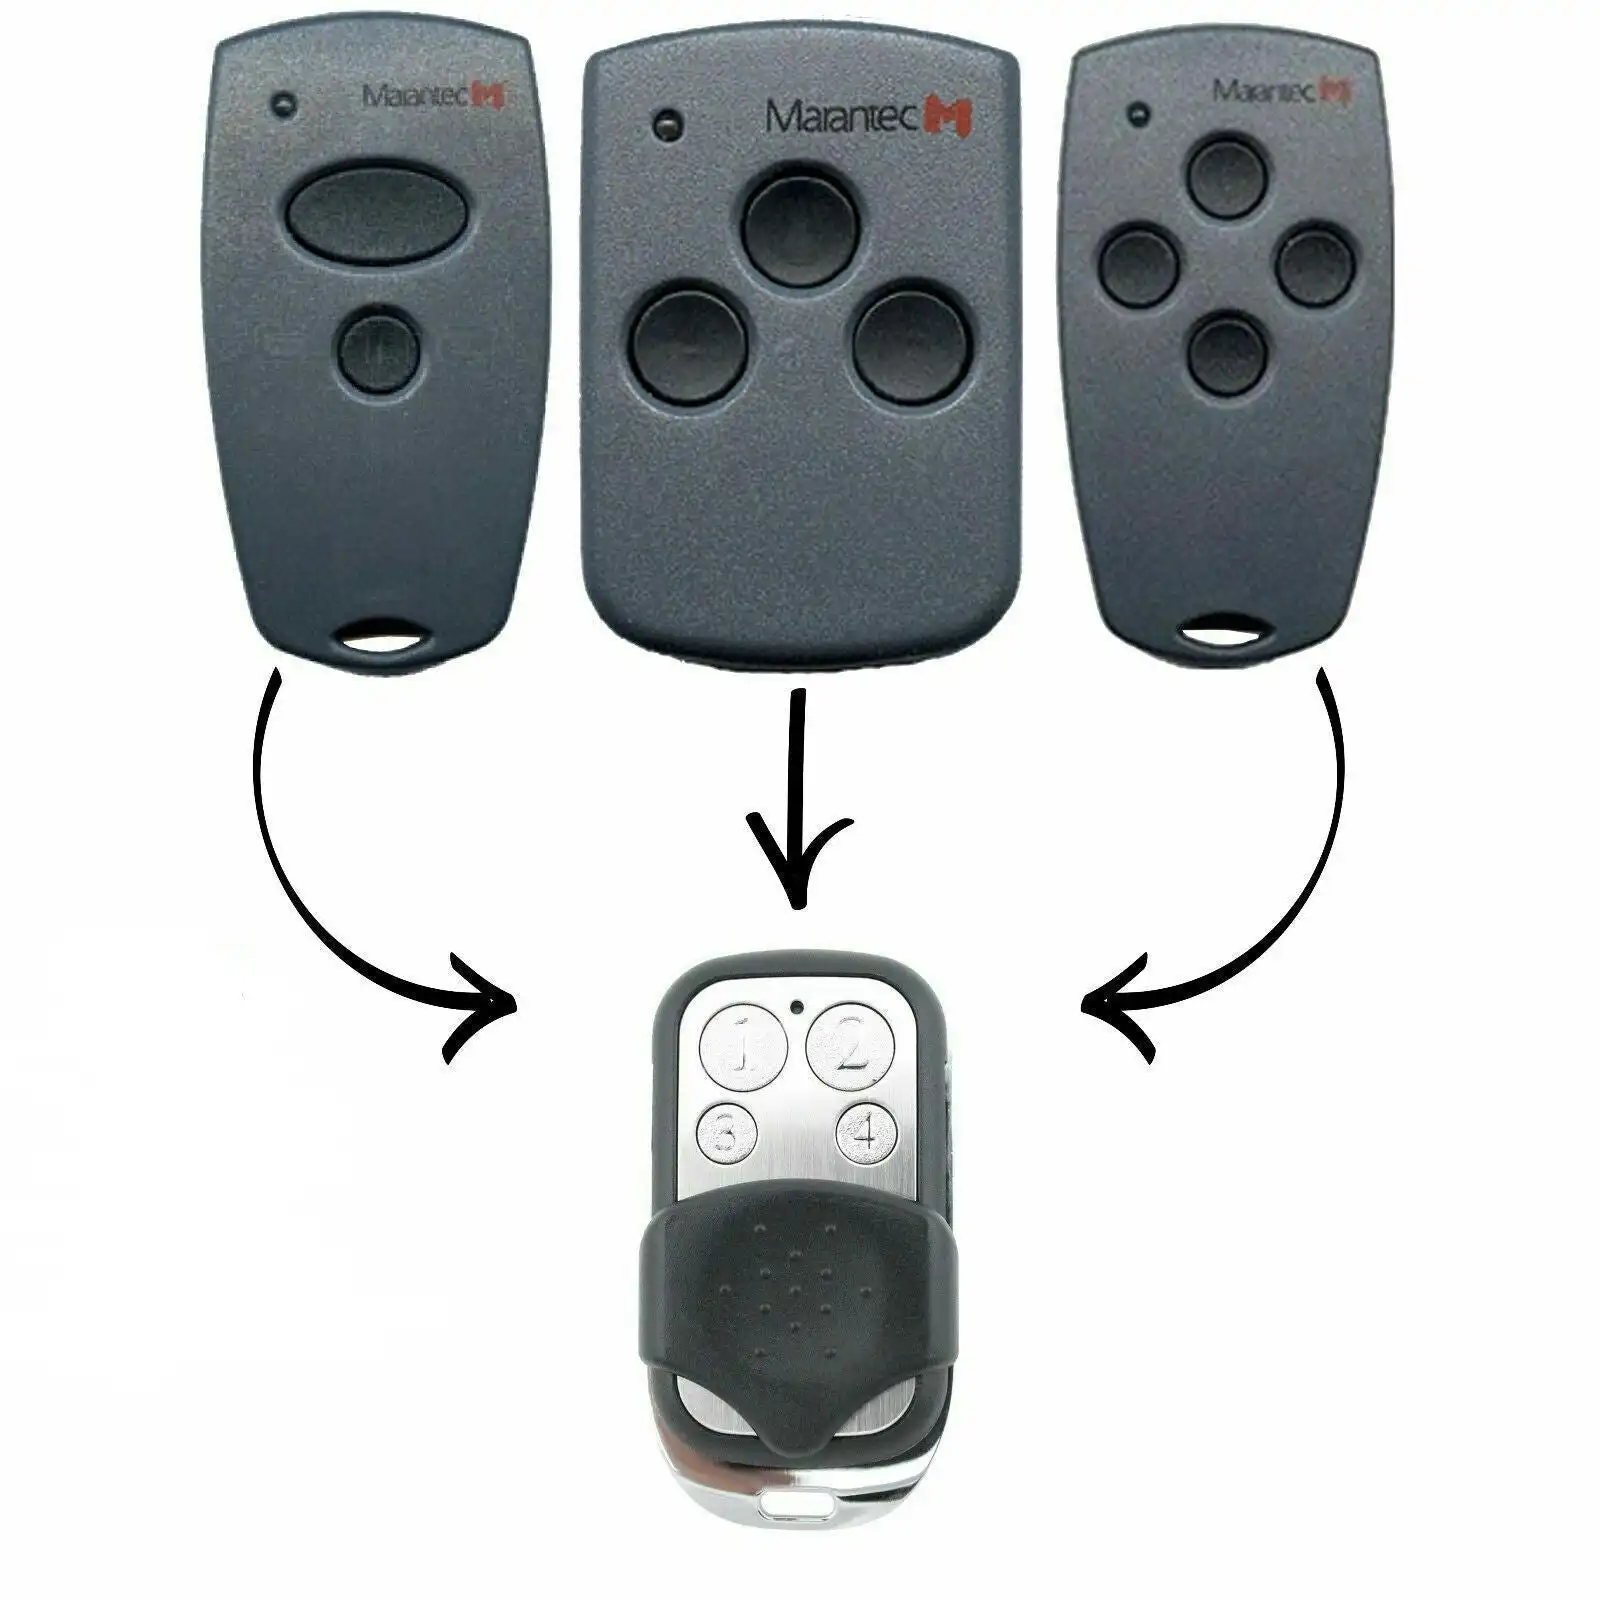 [2 Pack] Marantec D302/D304/D313 Compatible Garage/Gate Remote Digital/Comfort Clone